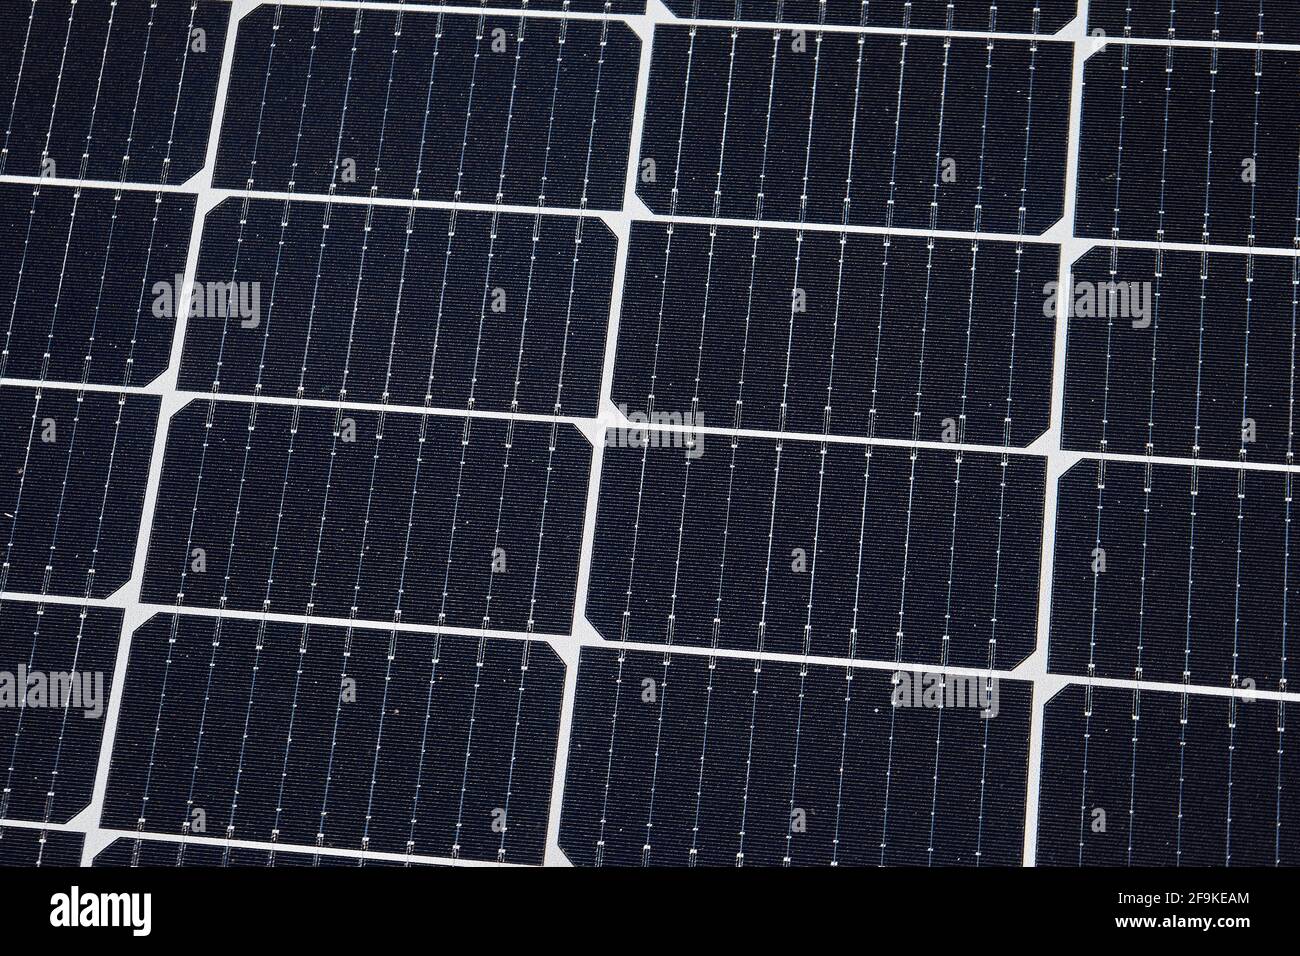 Photovoltaikanlage, Aufdachmontage, Solarmodule auf dem Dach von einem Gewerbebetrieb, geständert, Friedberg, Hessen, Deutschland Stock Photo